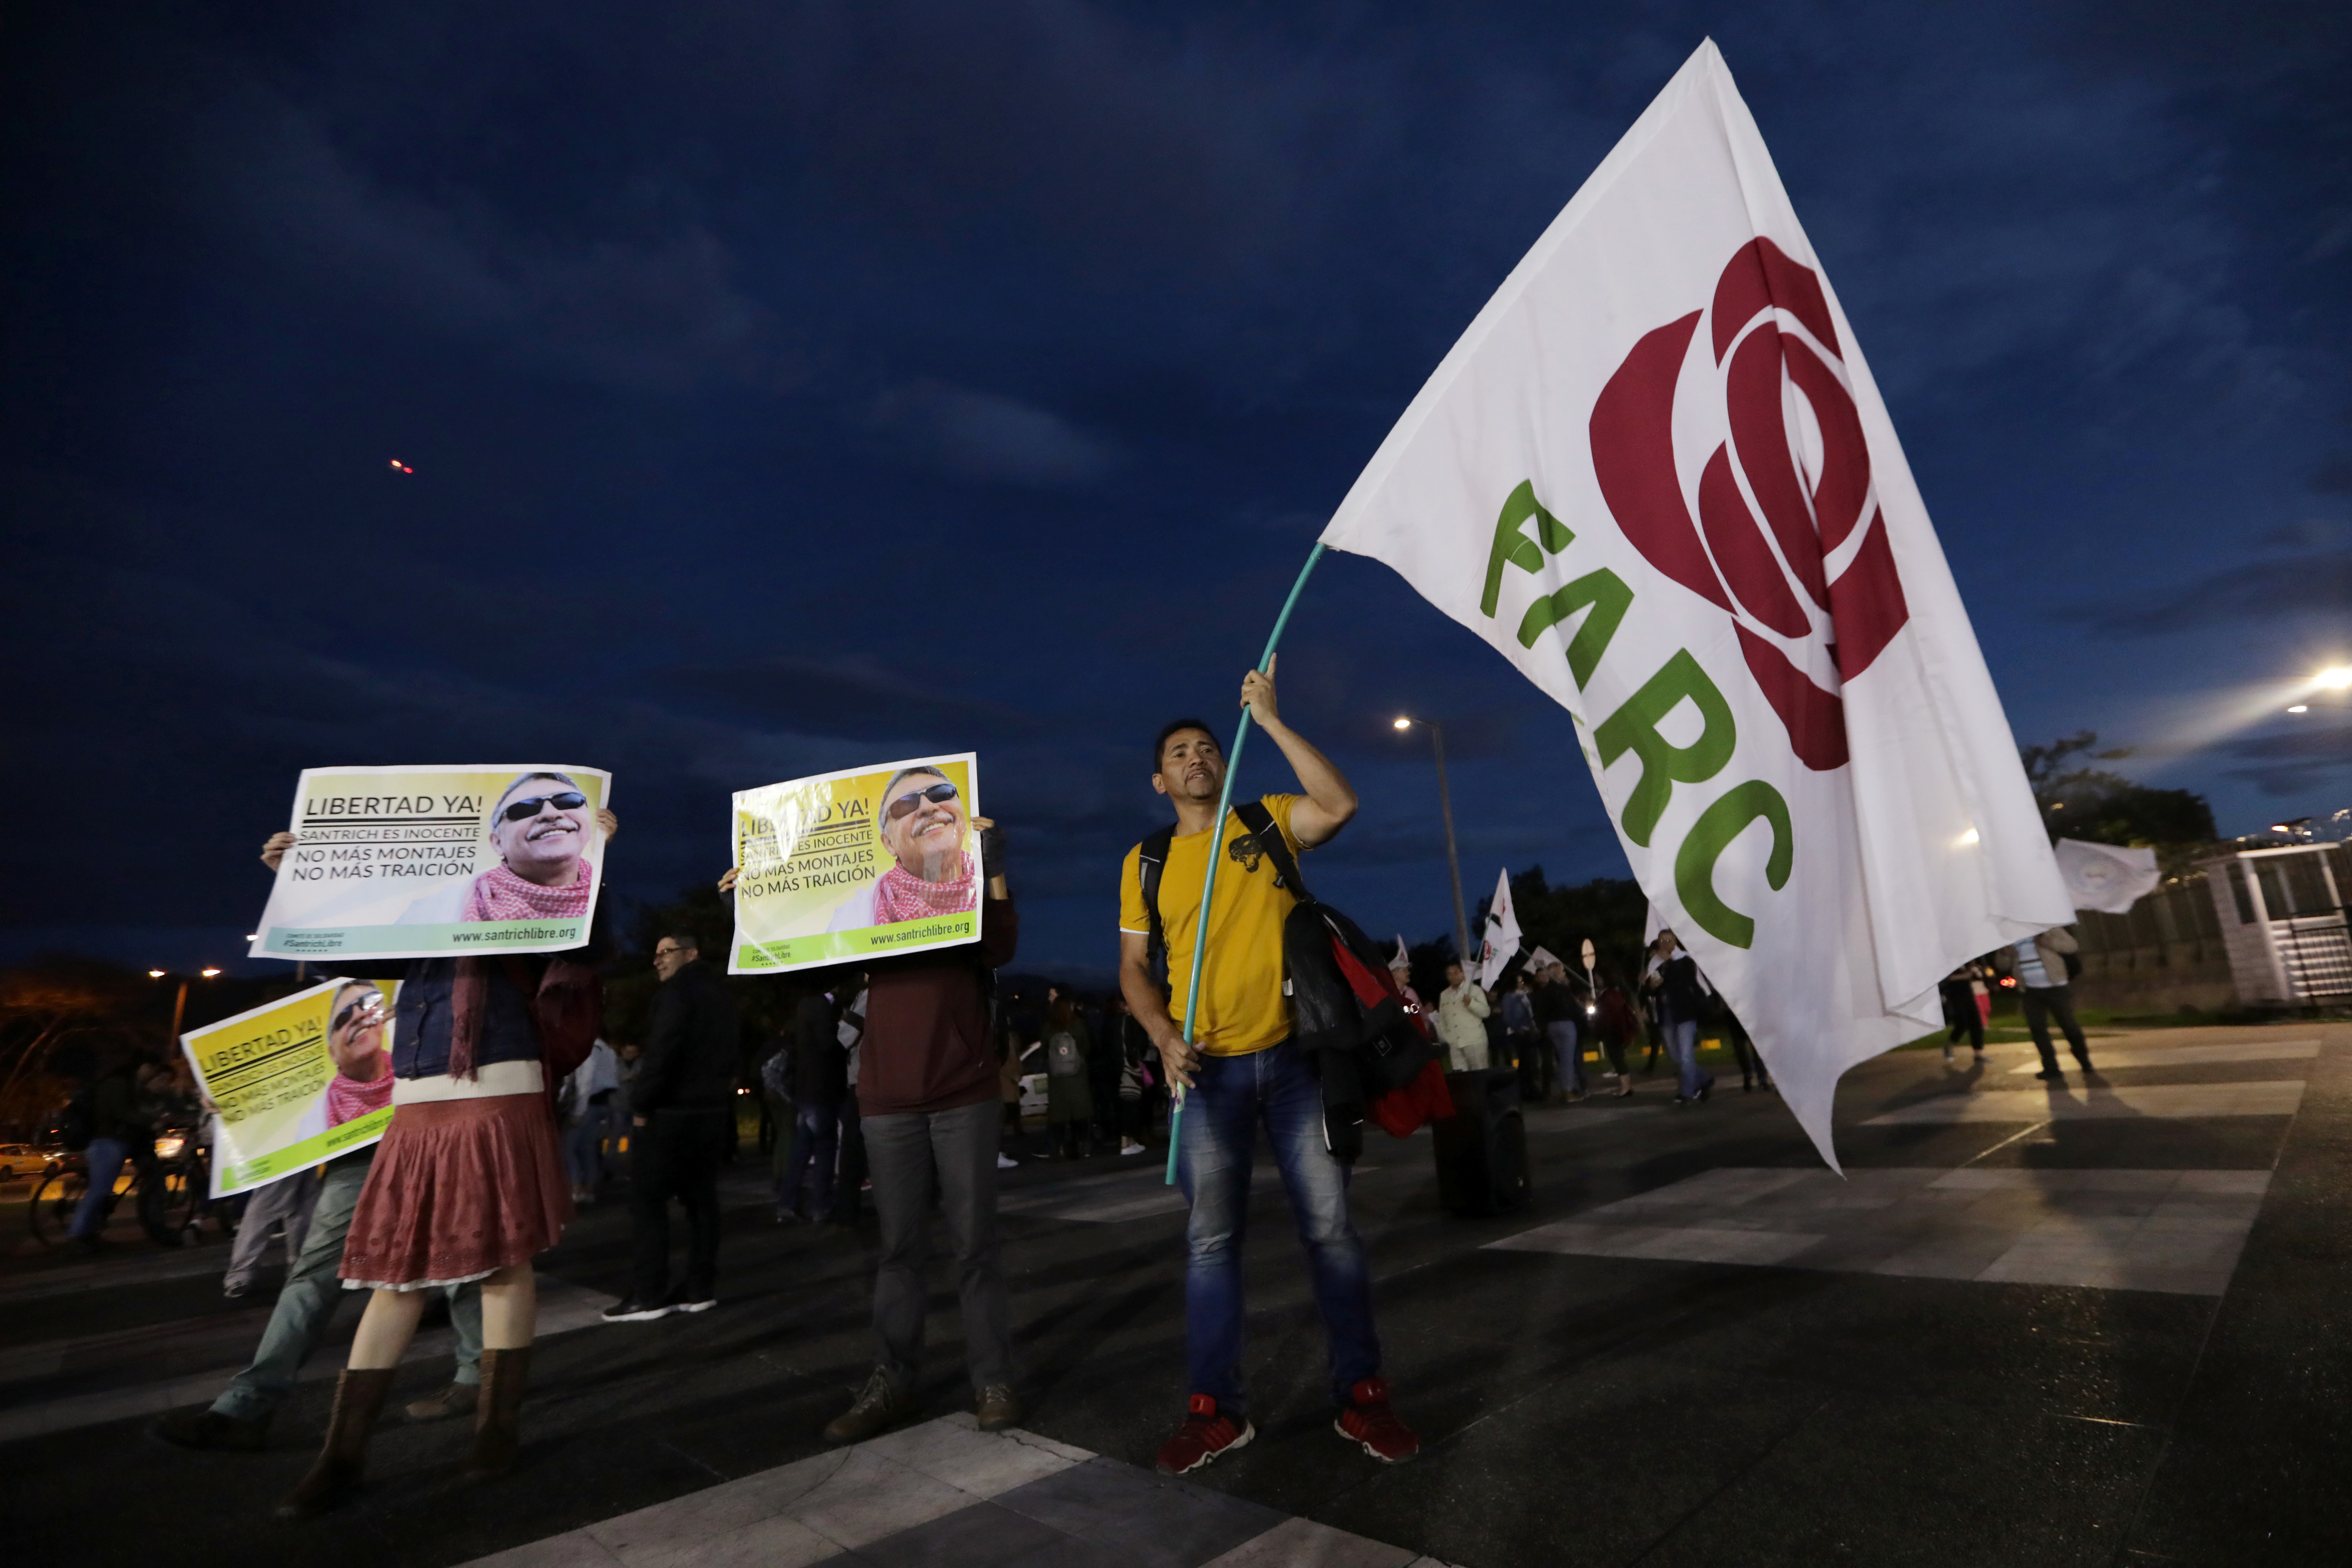 Partido político de las Farc en Colombia cambia de nombre a “Comunes”